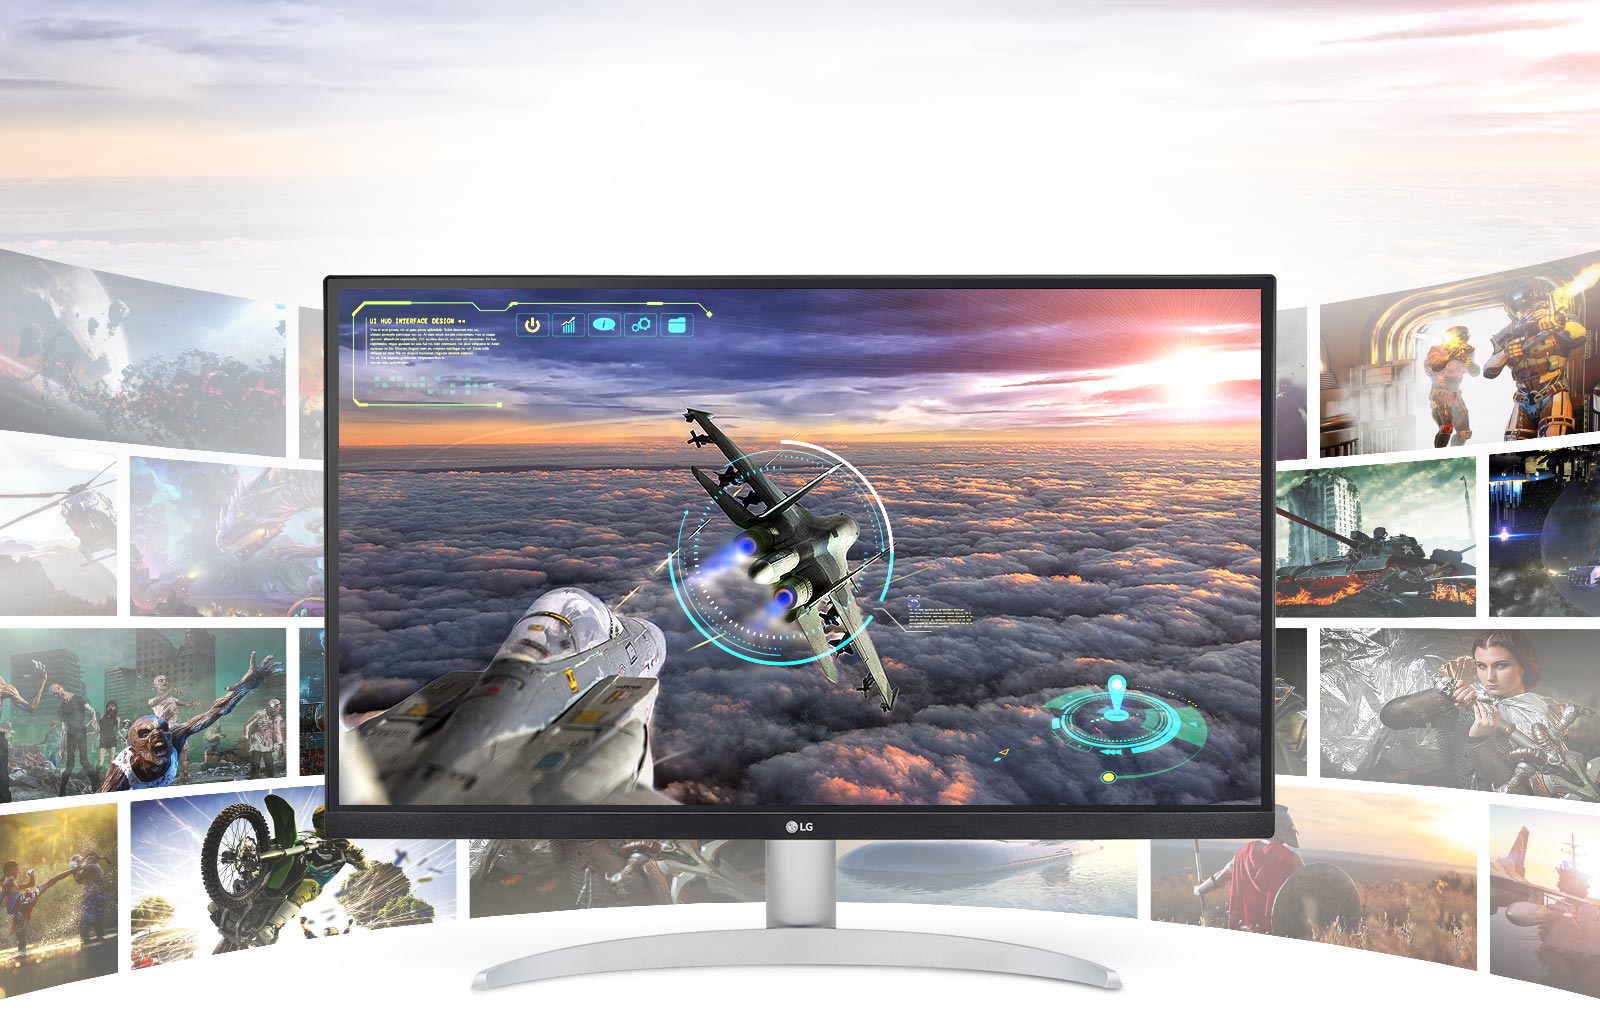 Gamingscène met uitzonderlijke helderheid en details op het LG UHD 4K-scherm